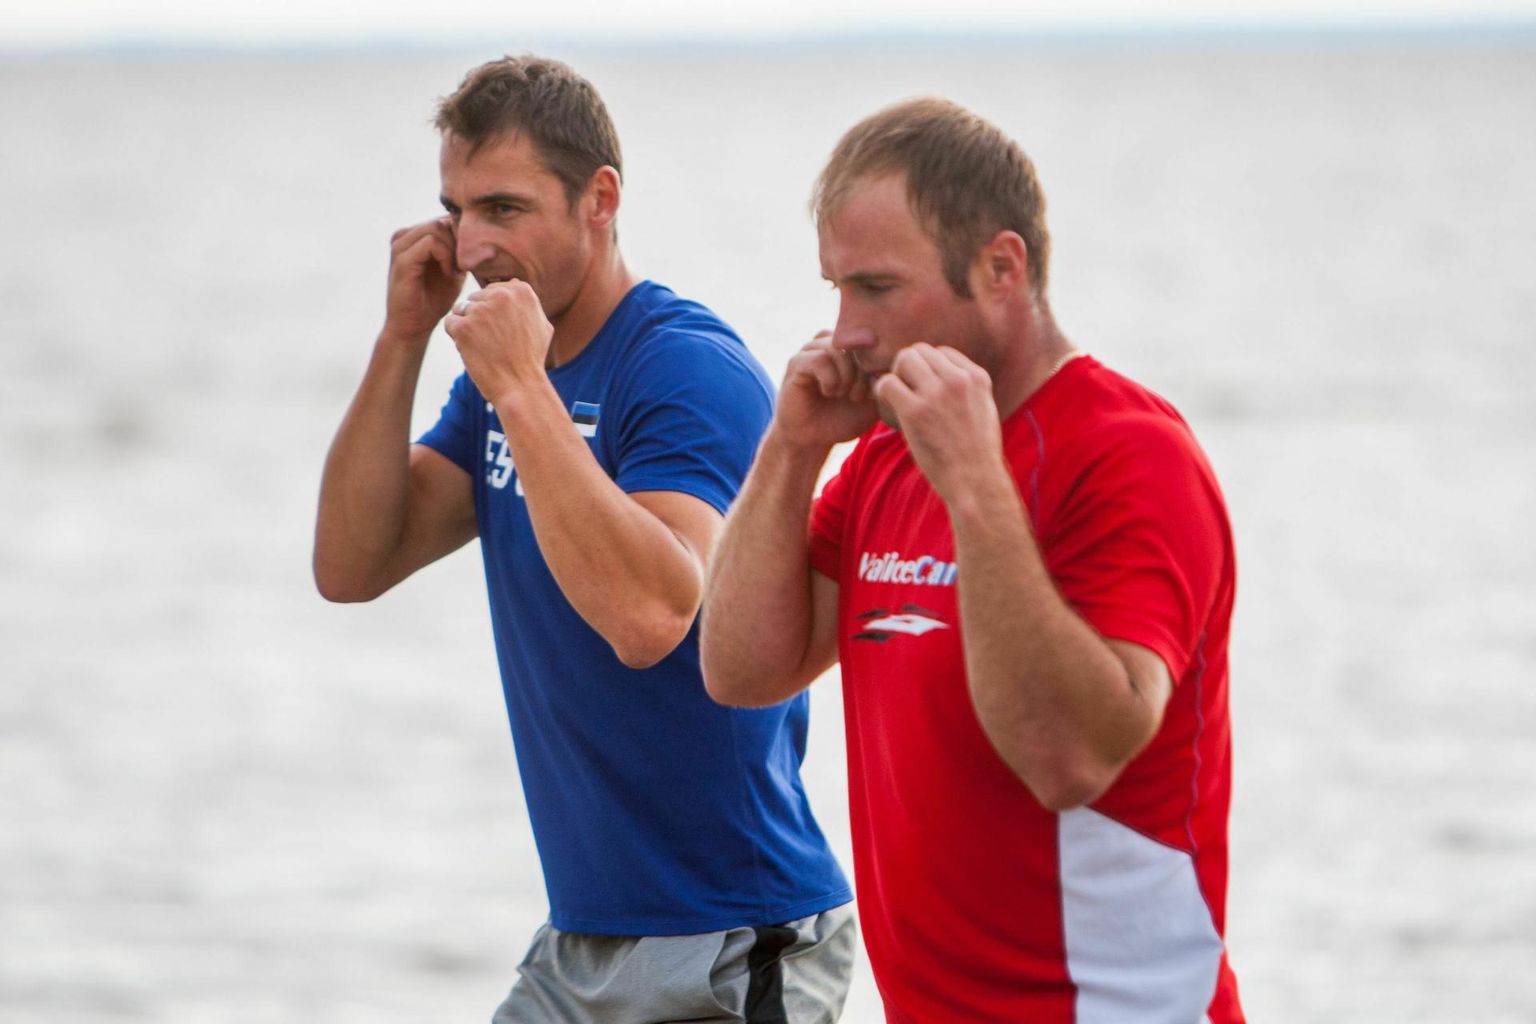 Tiitlivõistlustelt medaleid võitnud sõudjad Allar Raja (vasakul) ja Andrei Jämsä on teistegi spordialadega tutvust teinud. Arhiivifotol löövad sõudelegendid kaasa kontaktivabal MMA- ehk maasvõitluse treeningul.